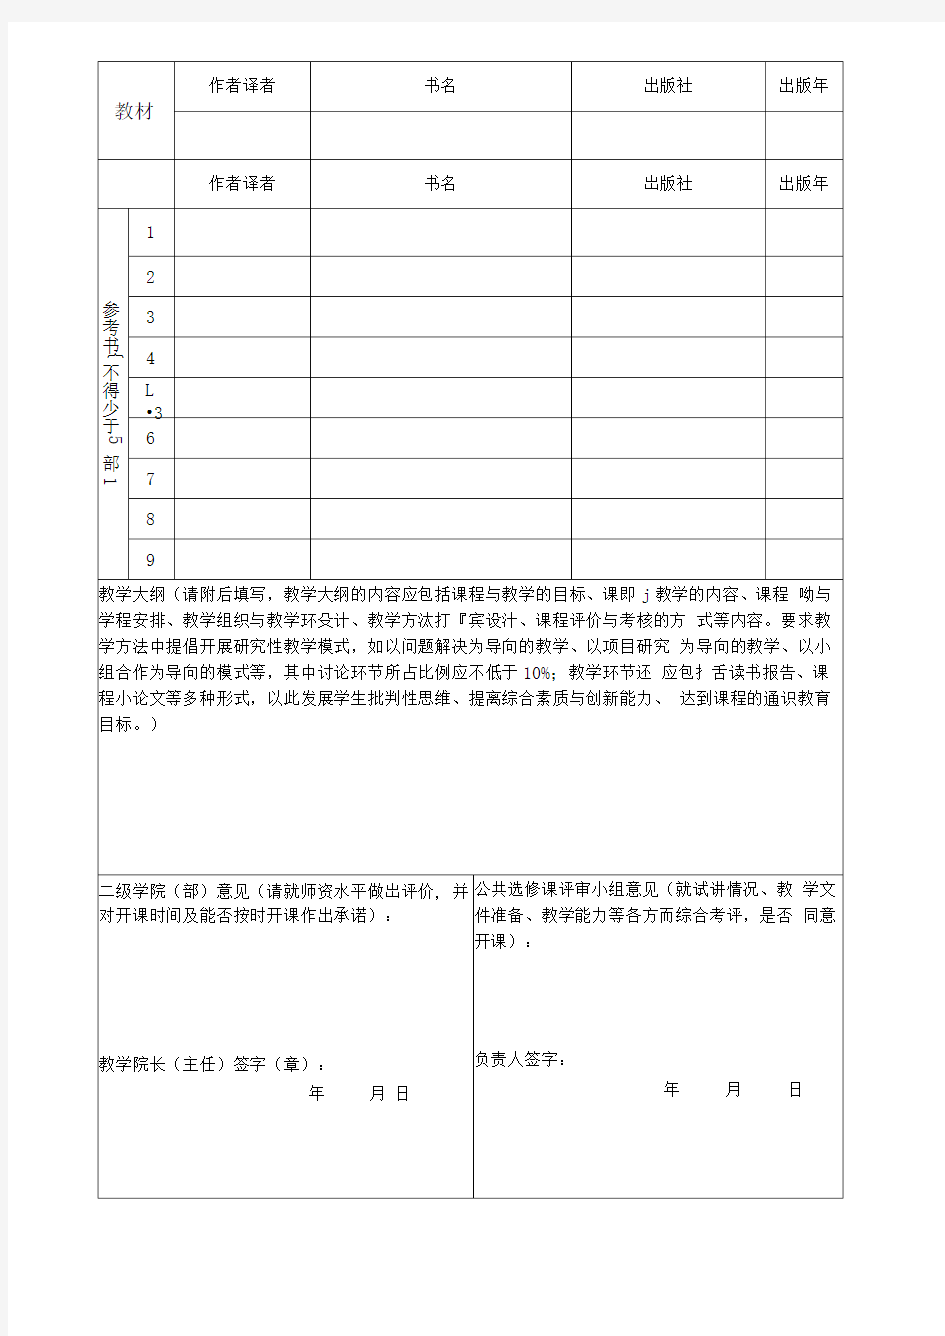 南京工业大学浦江学院公共选修课开课申请表